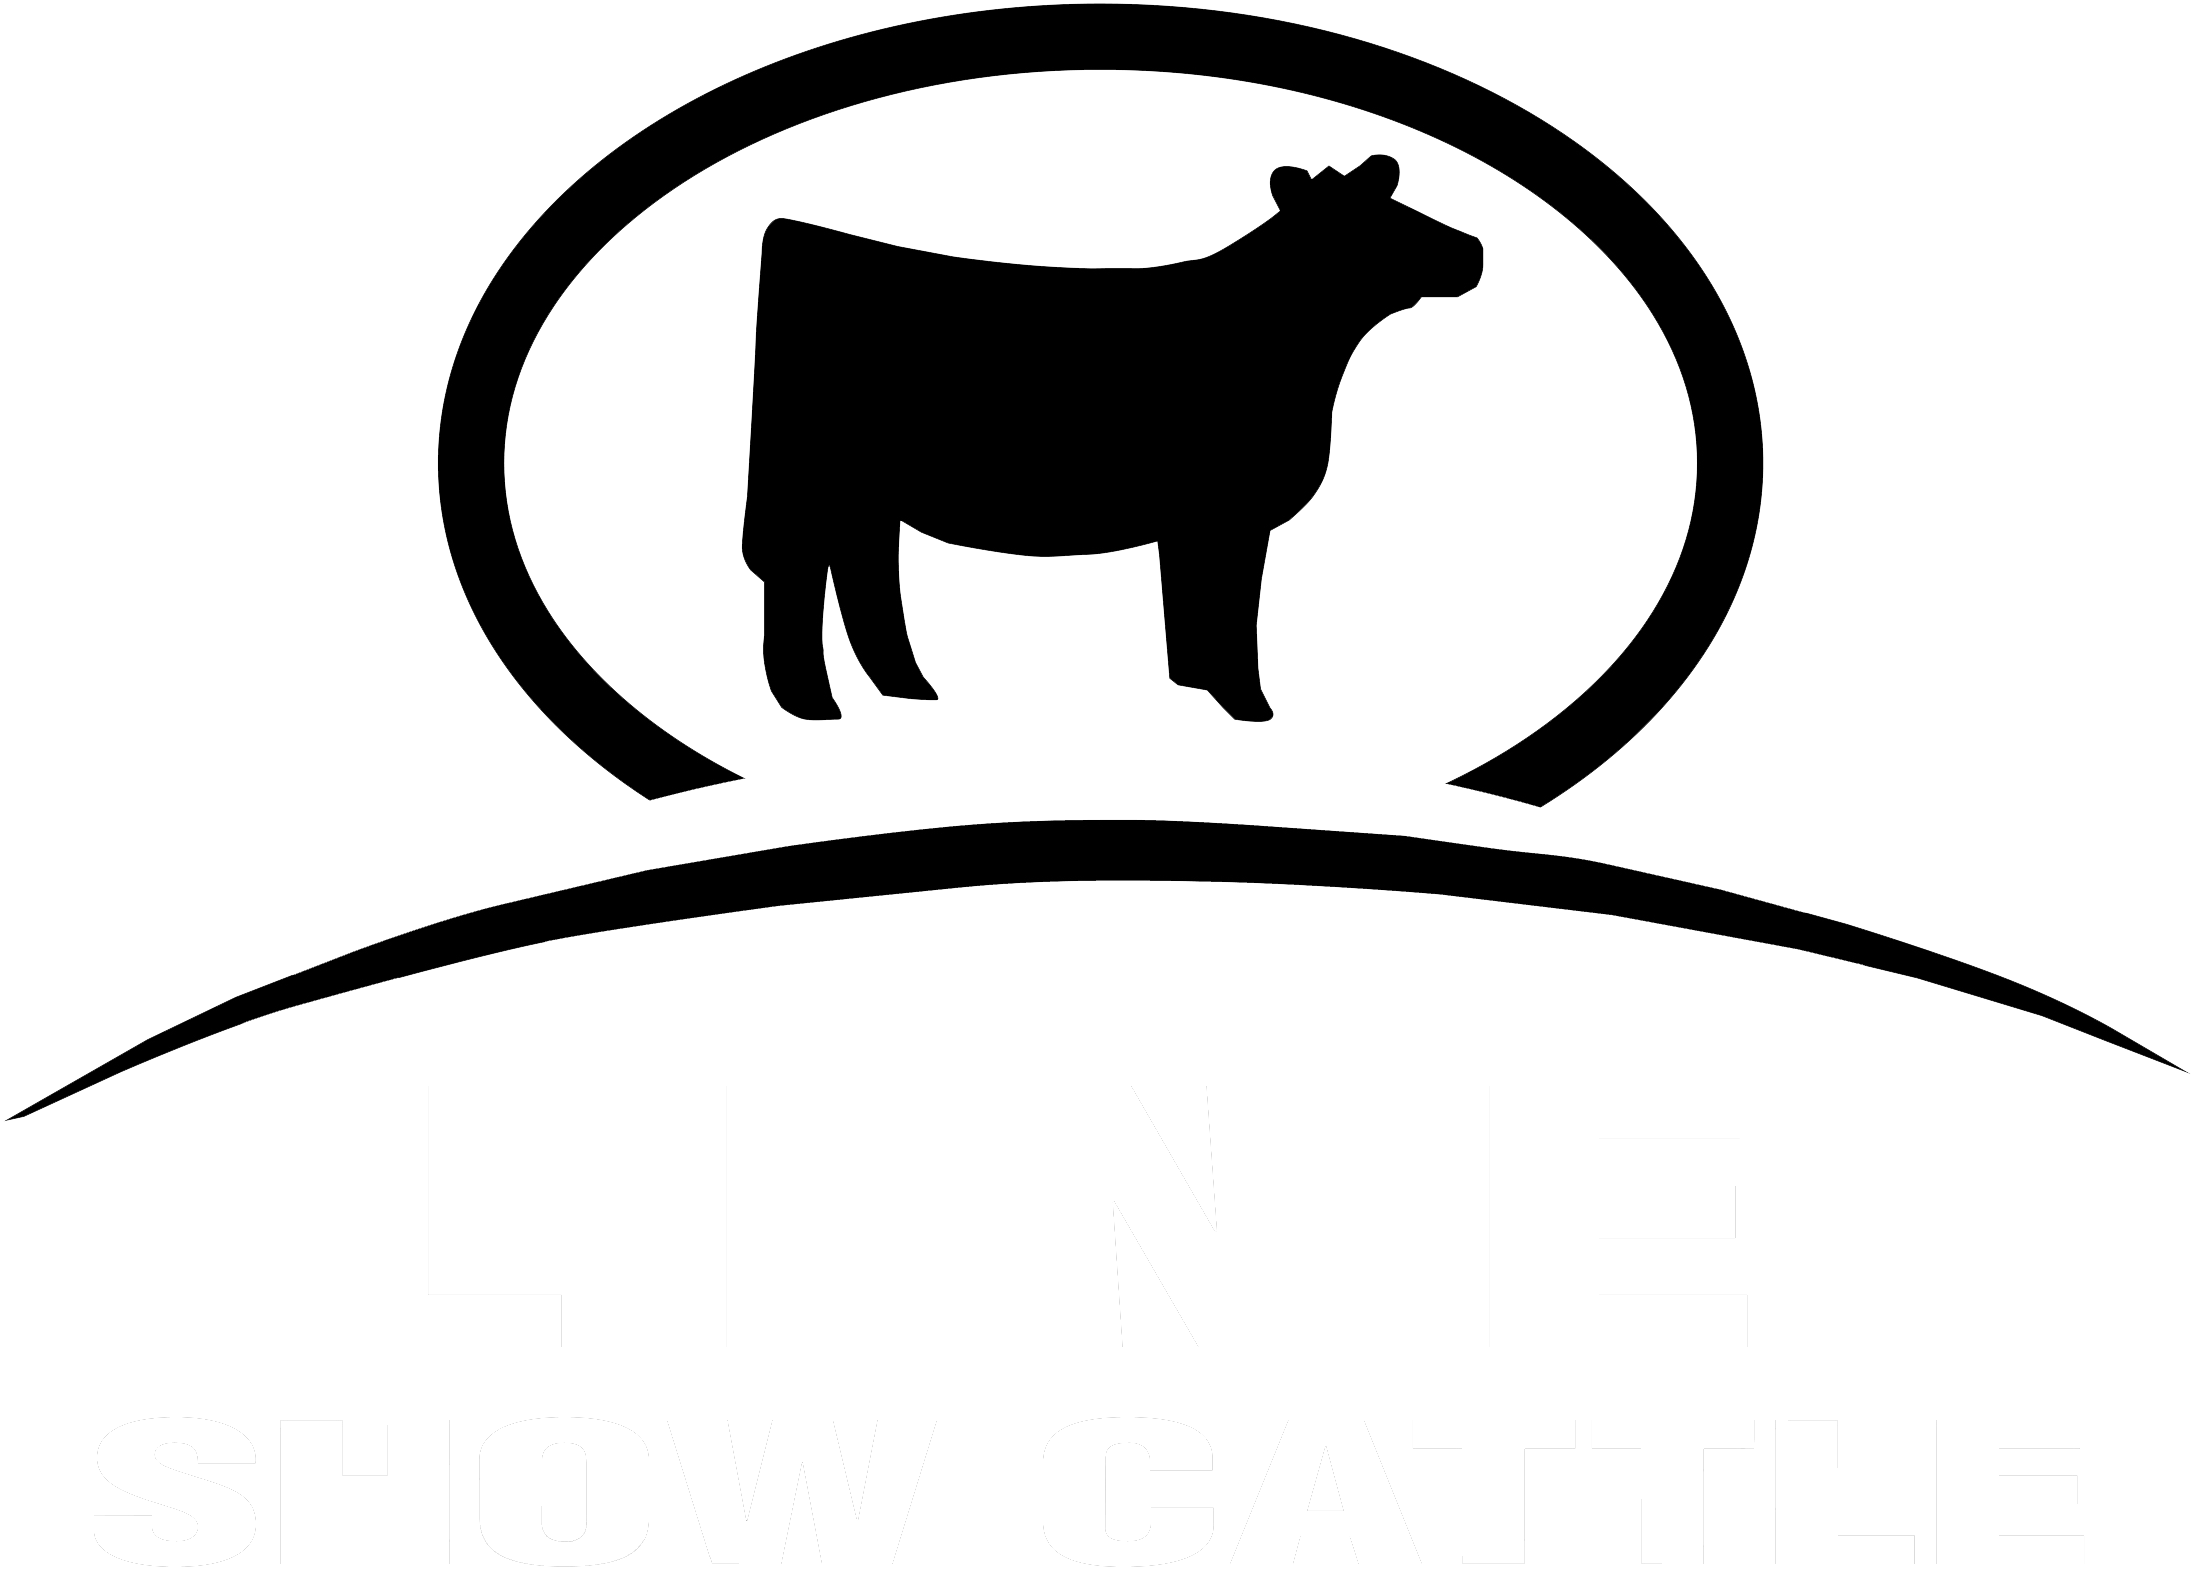 Line Show Cattle Line Show Cattle - Cattle (2419x1680)